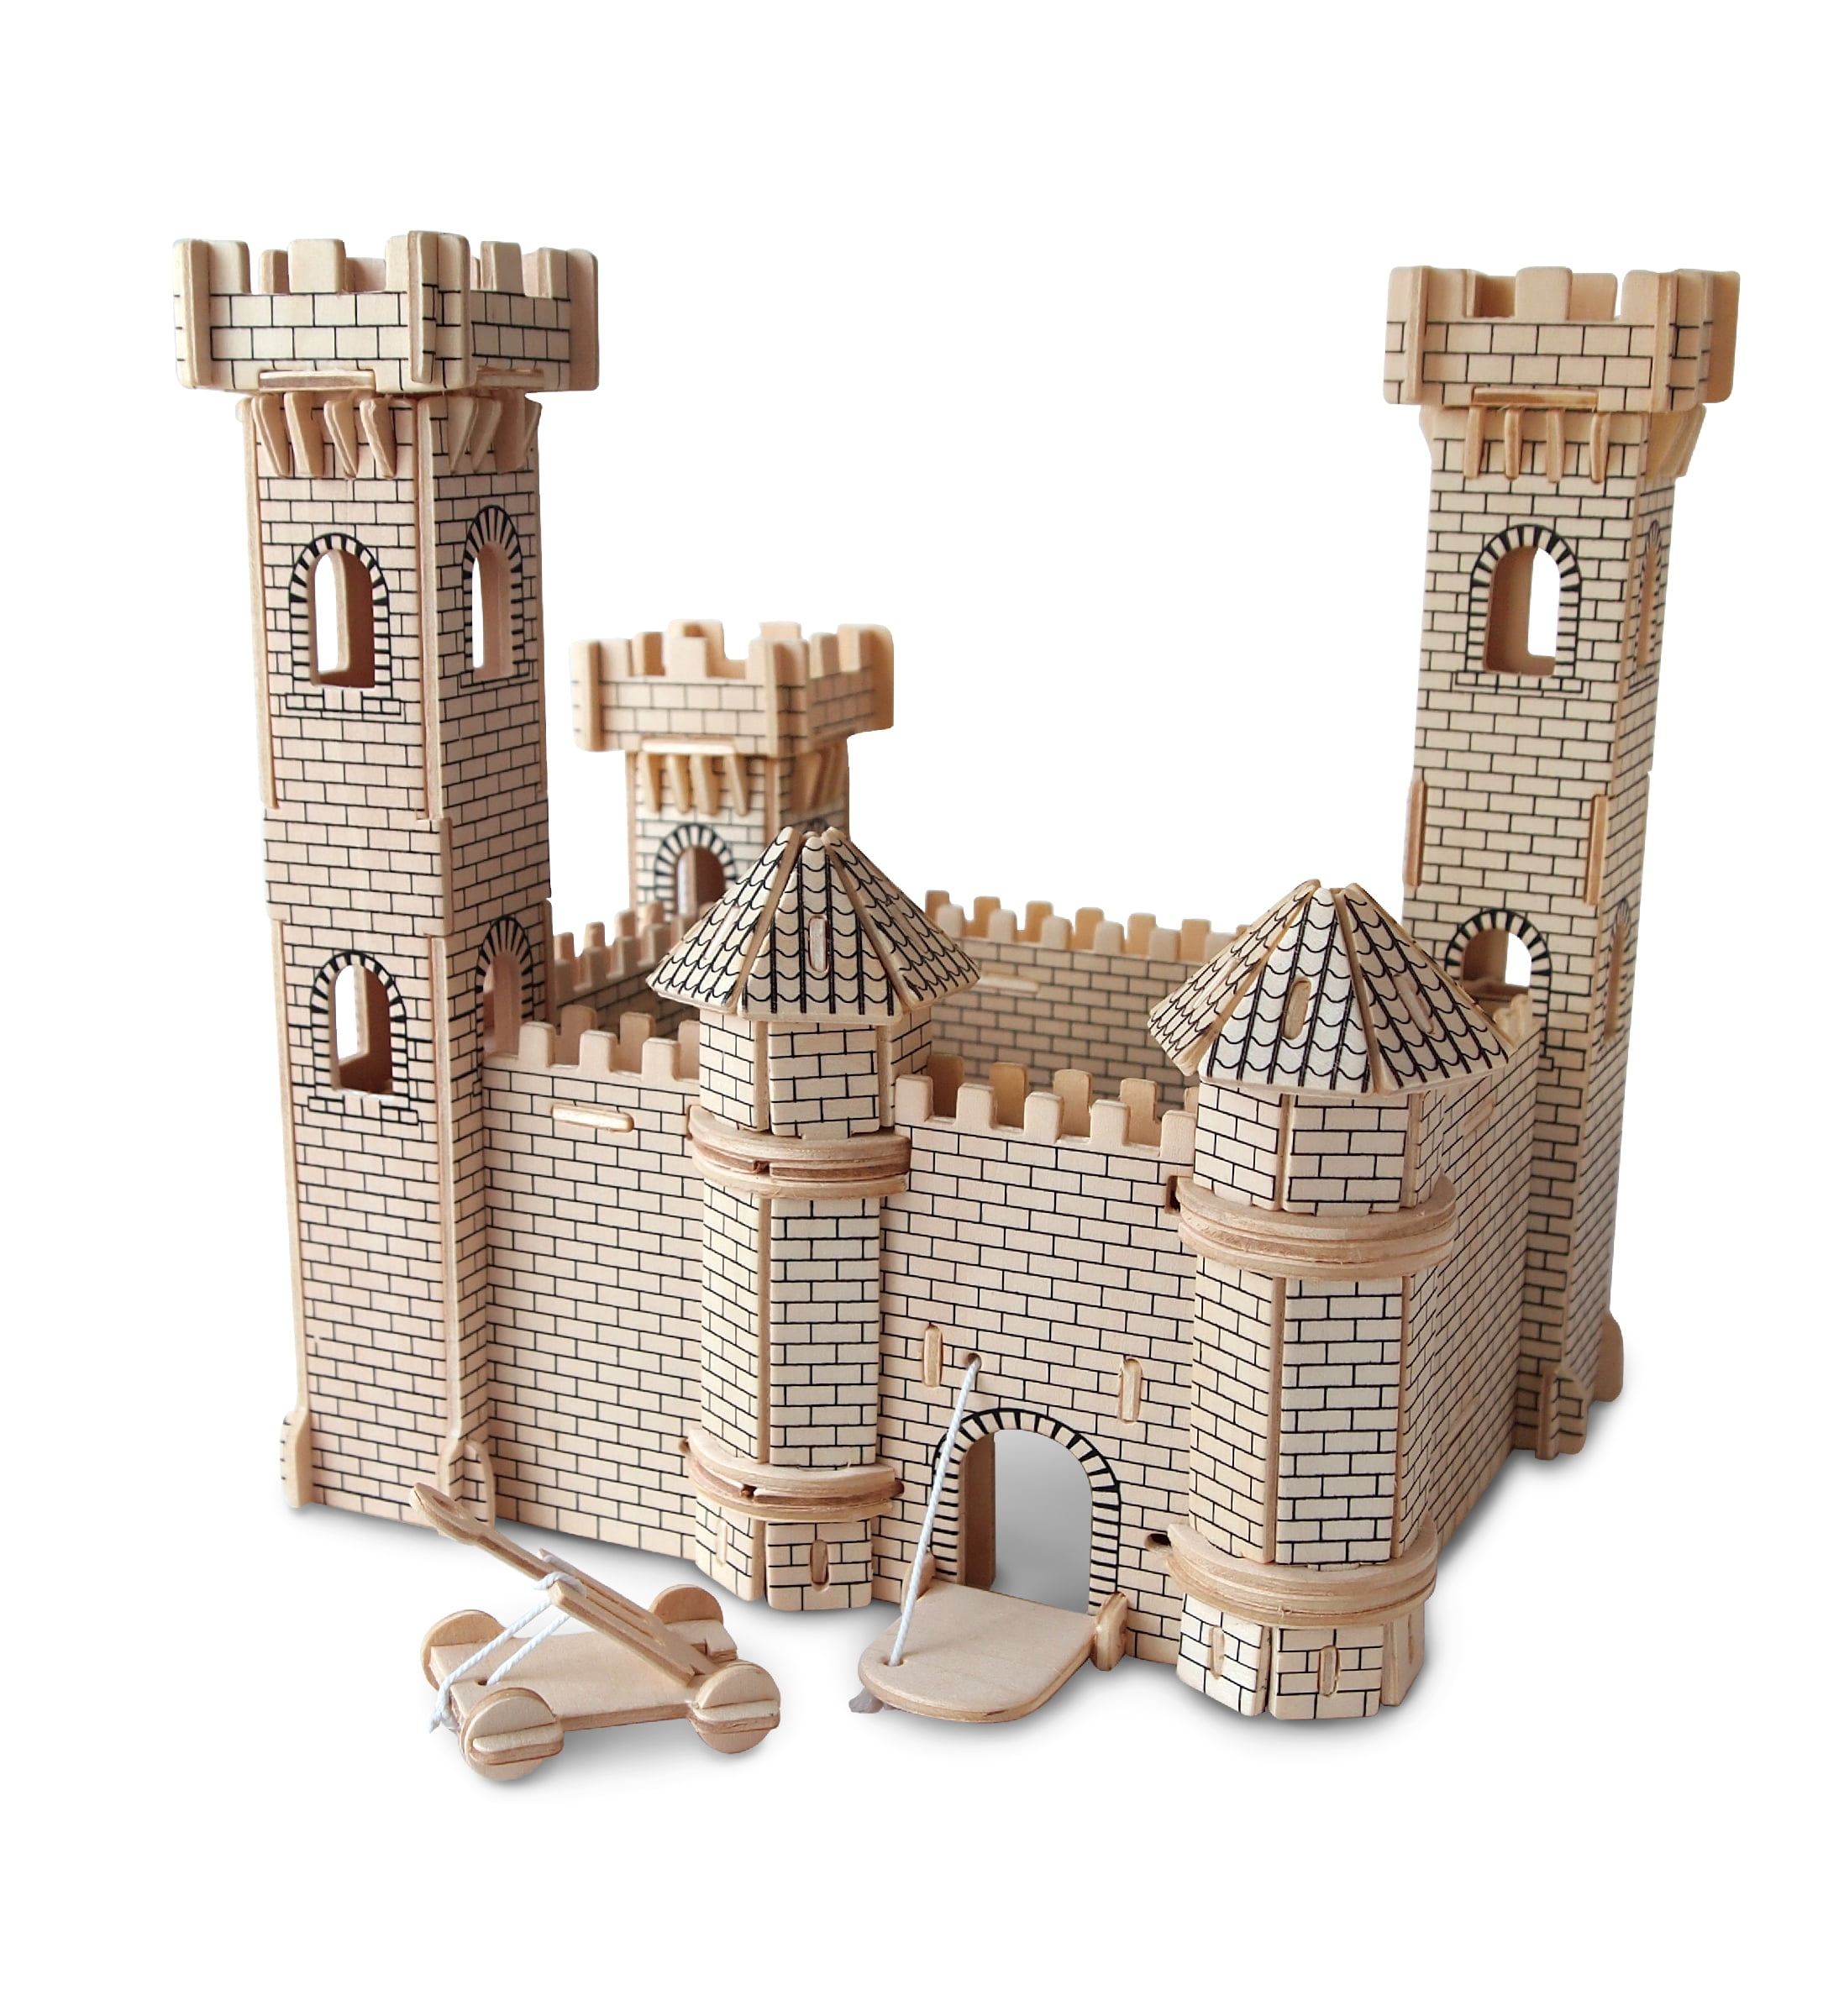 Puzzled 3D Puzzle Castle Set Wood Craft Construction Model Kit, Fun